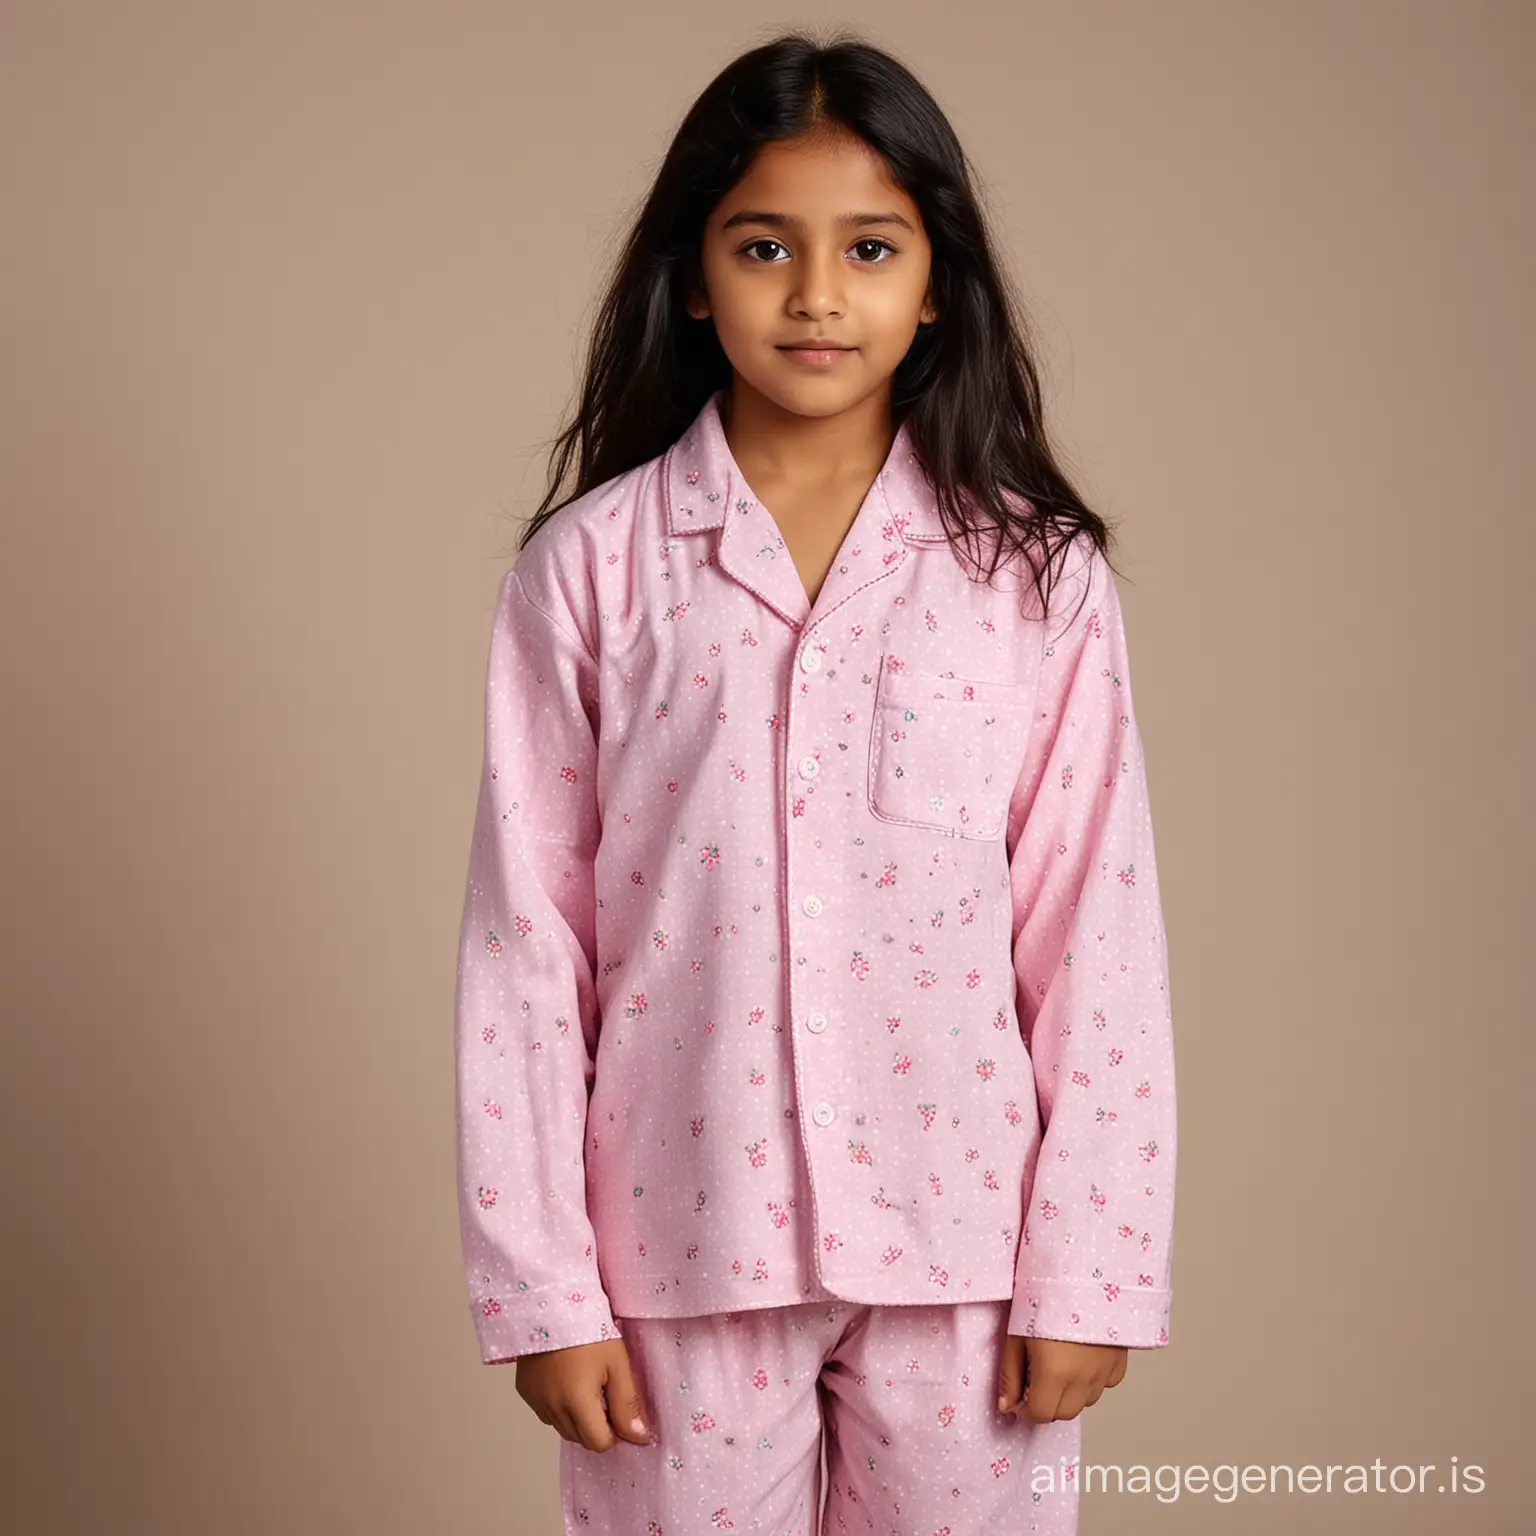 Indian girl, 12 year, in pajama